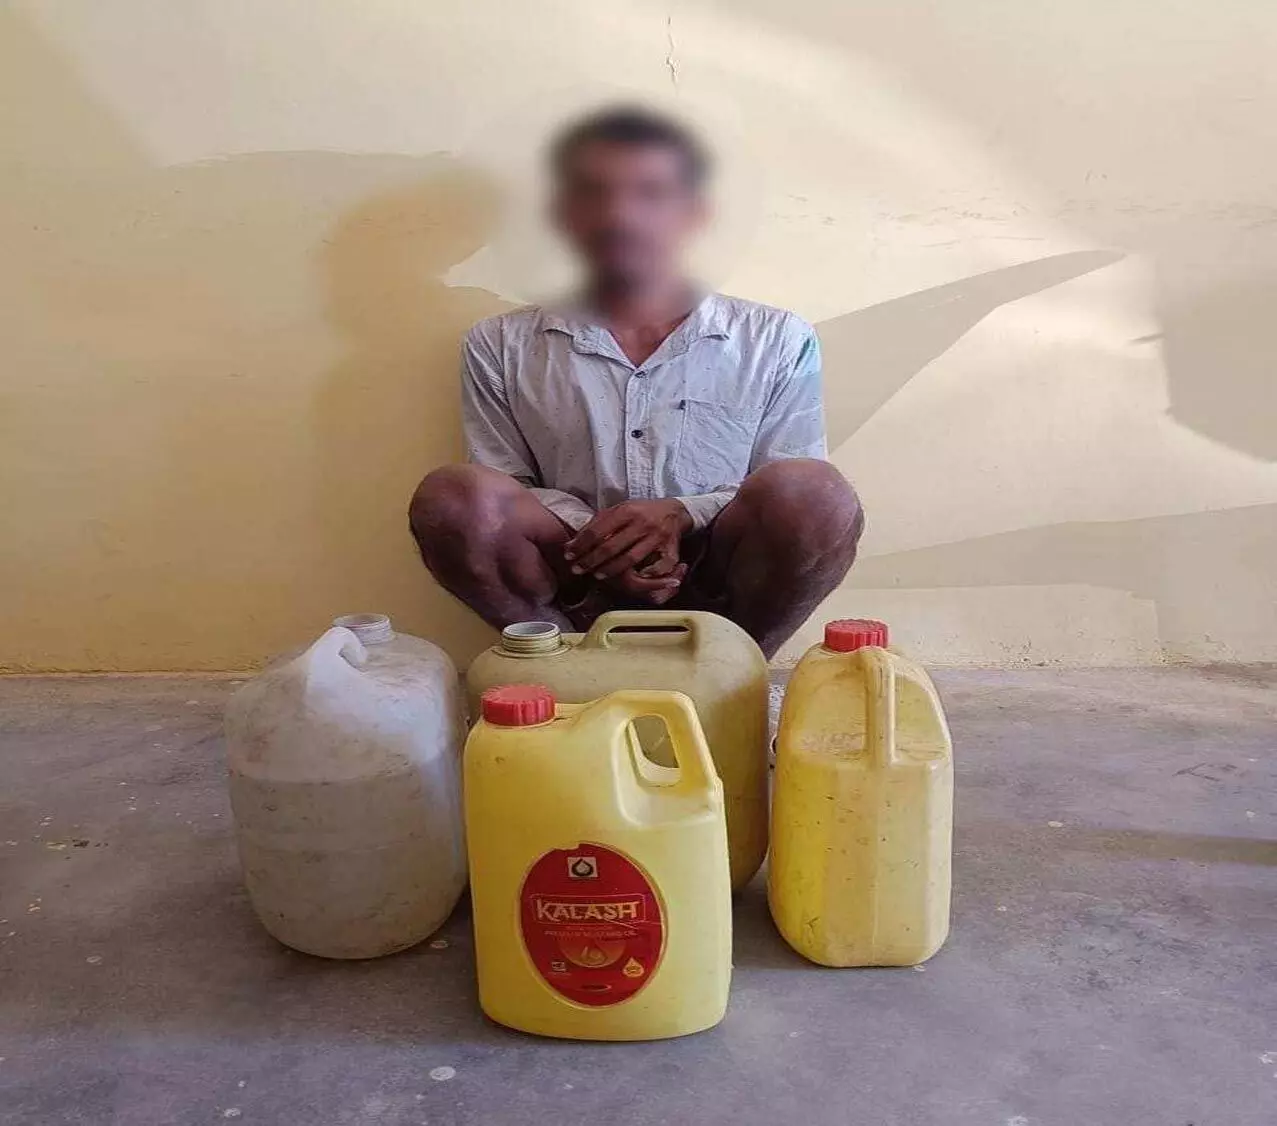 Excise Department की कार्रवाई, 30.50 लीटर महुआ शराब जब्त